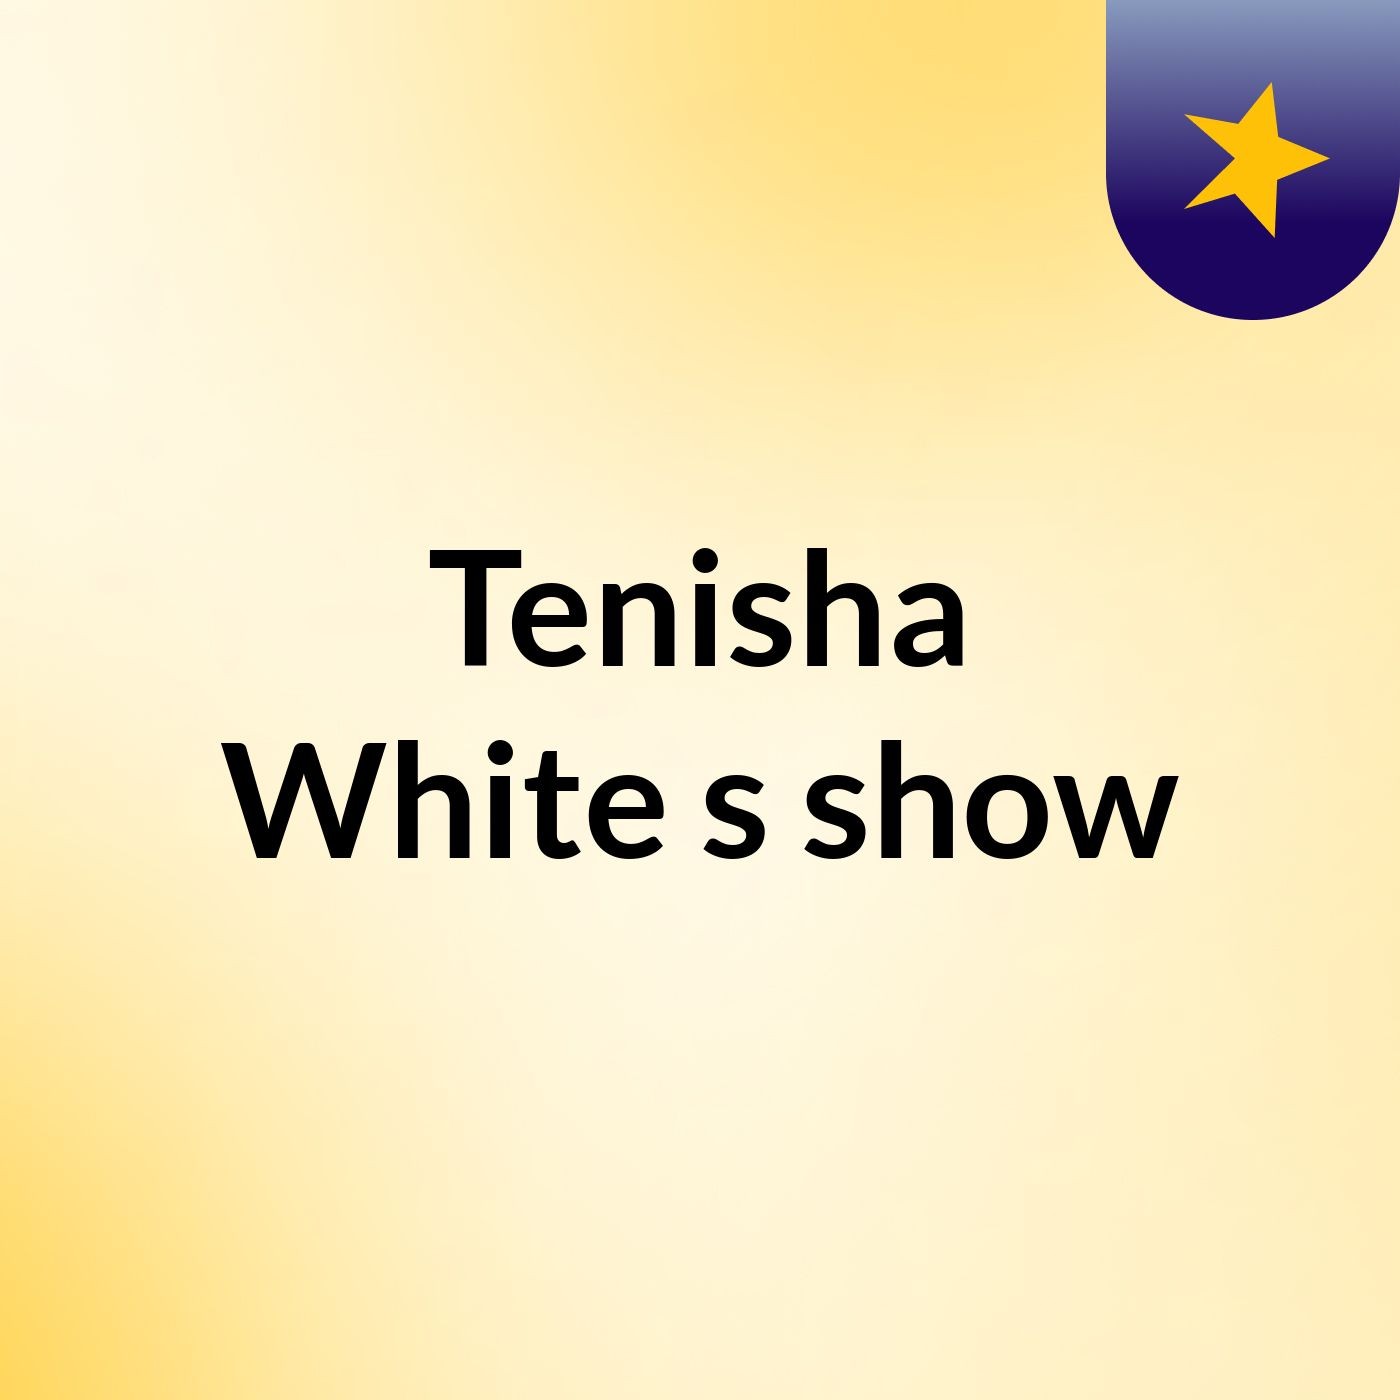 Tenisha White's show